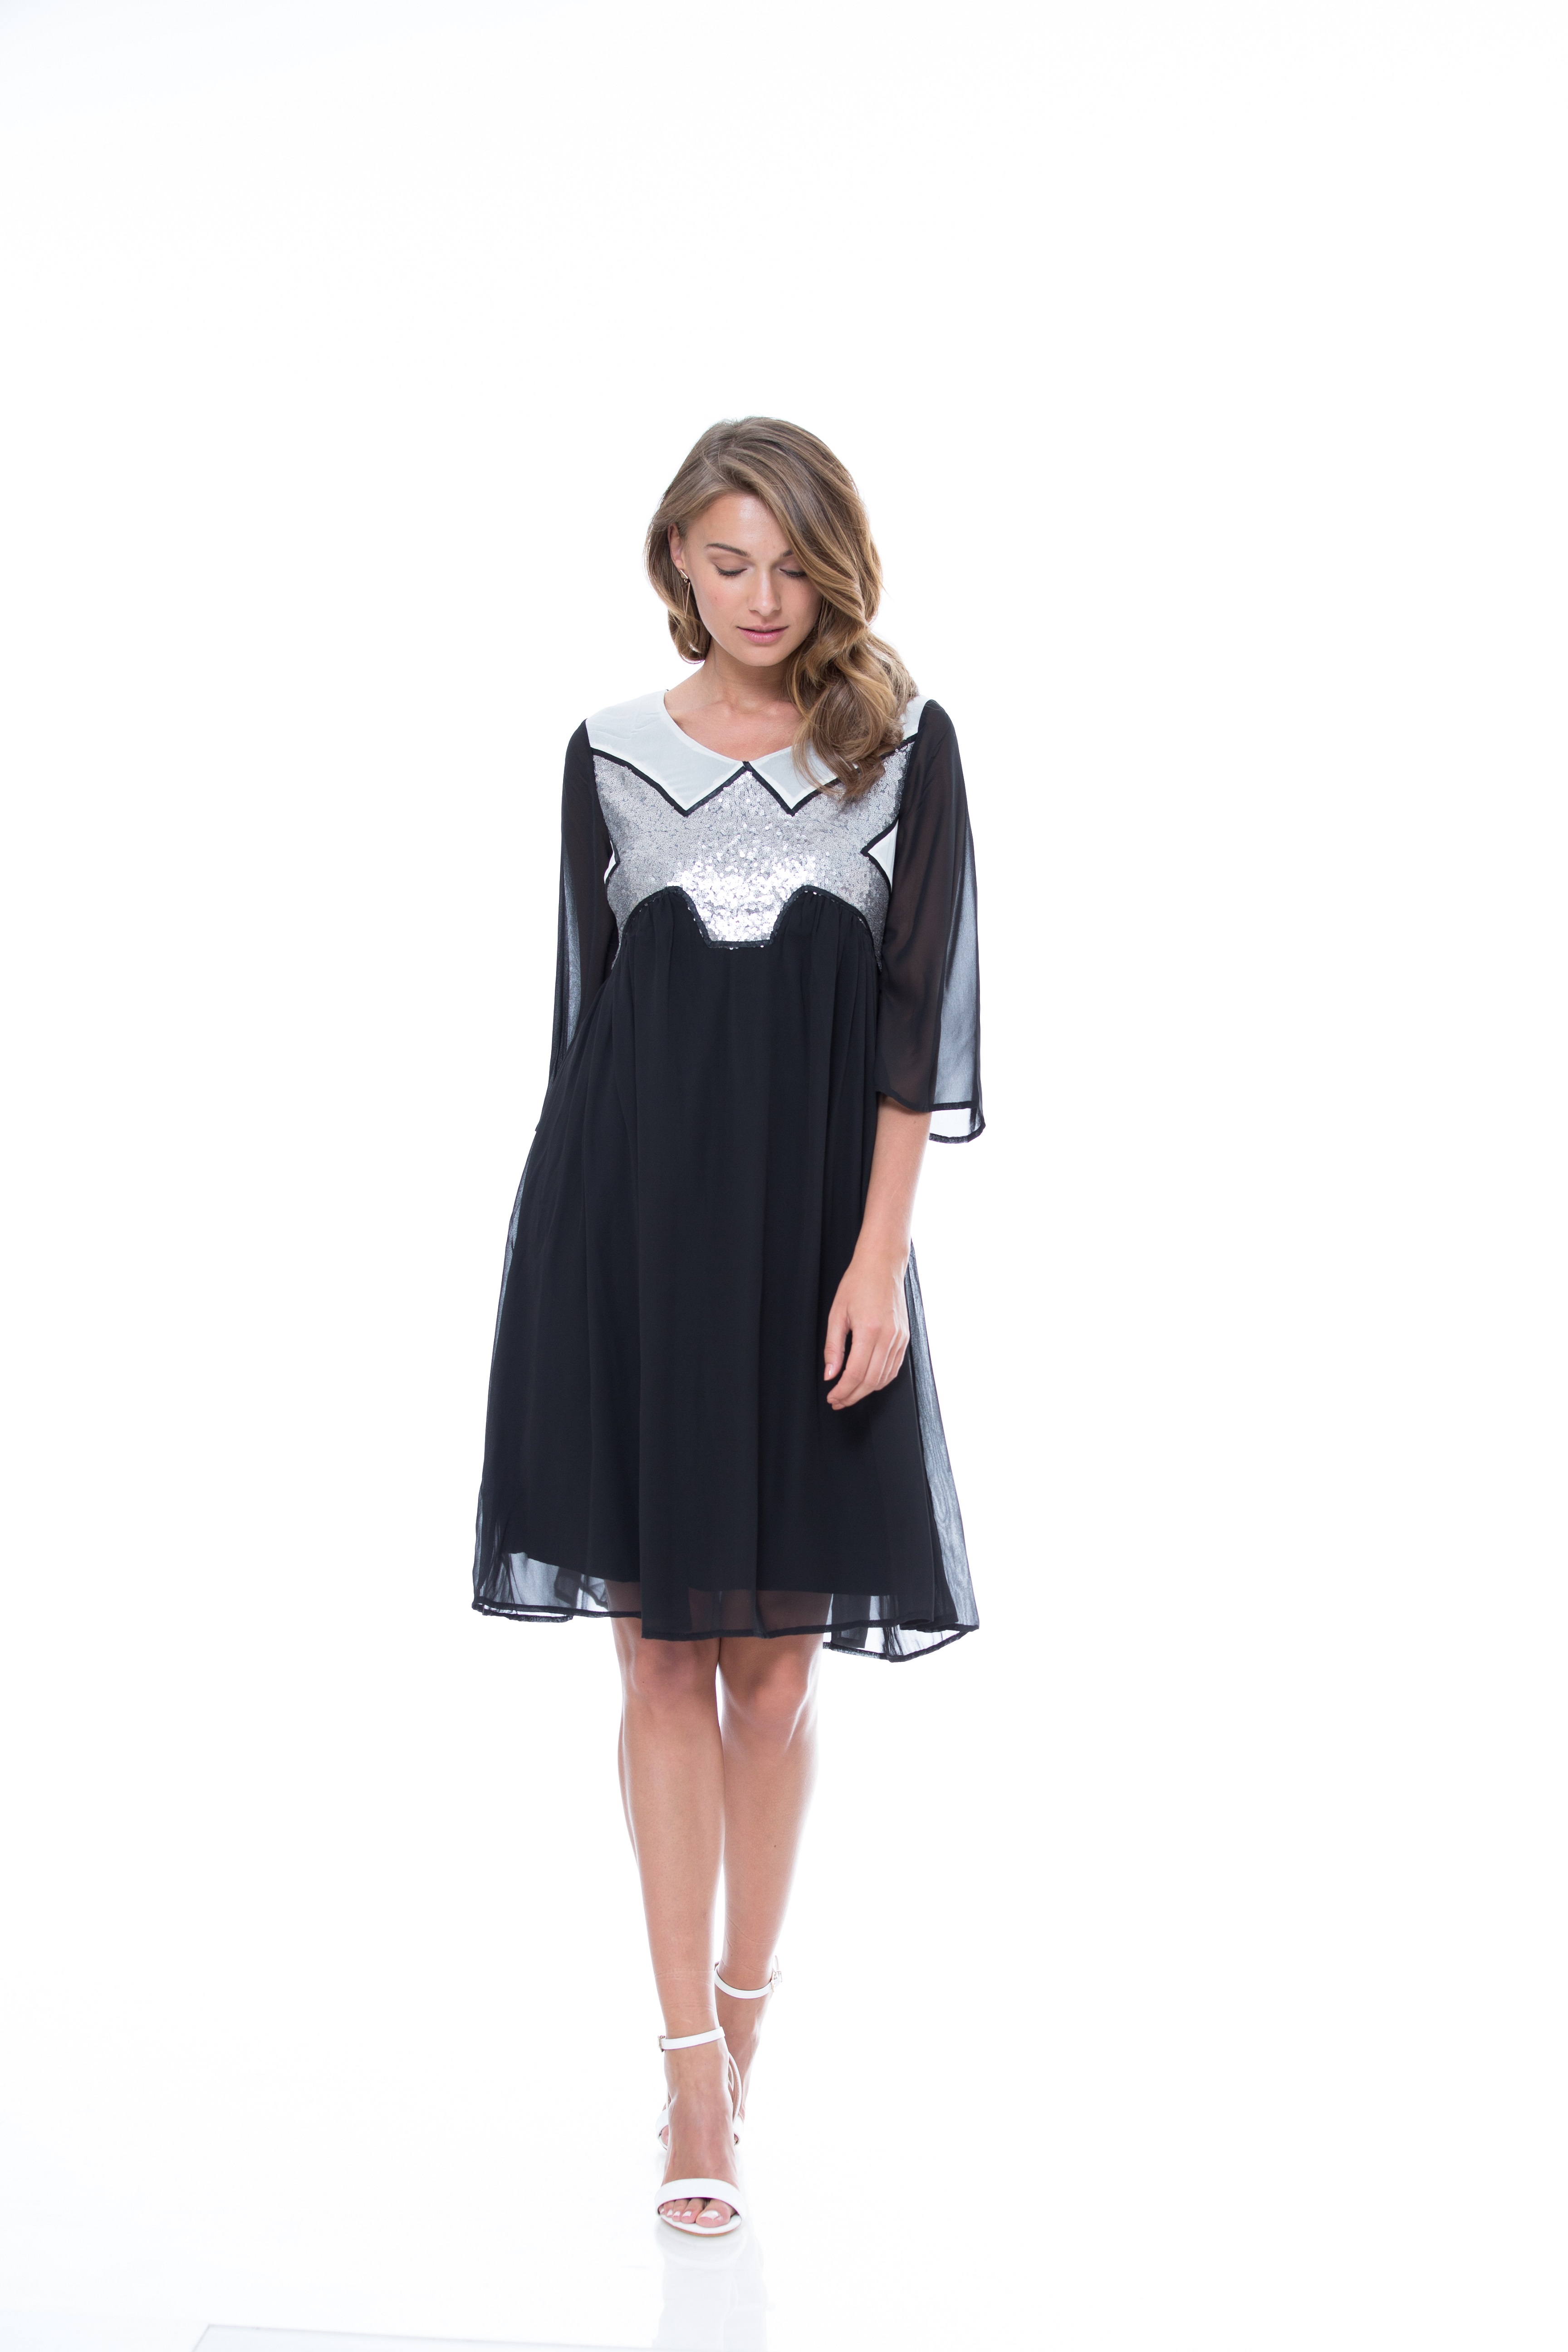 שמלת ערב שחורה- מטאלית, 359 שח, להשיג בהדס עיצוב אופנה לירידי החגים של SHEEK ME,  אמיר צוק צלם